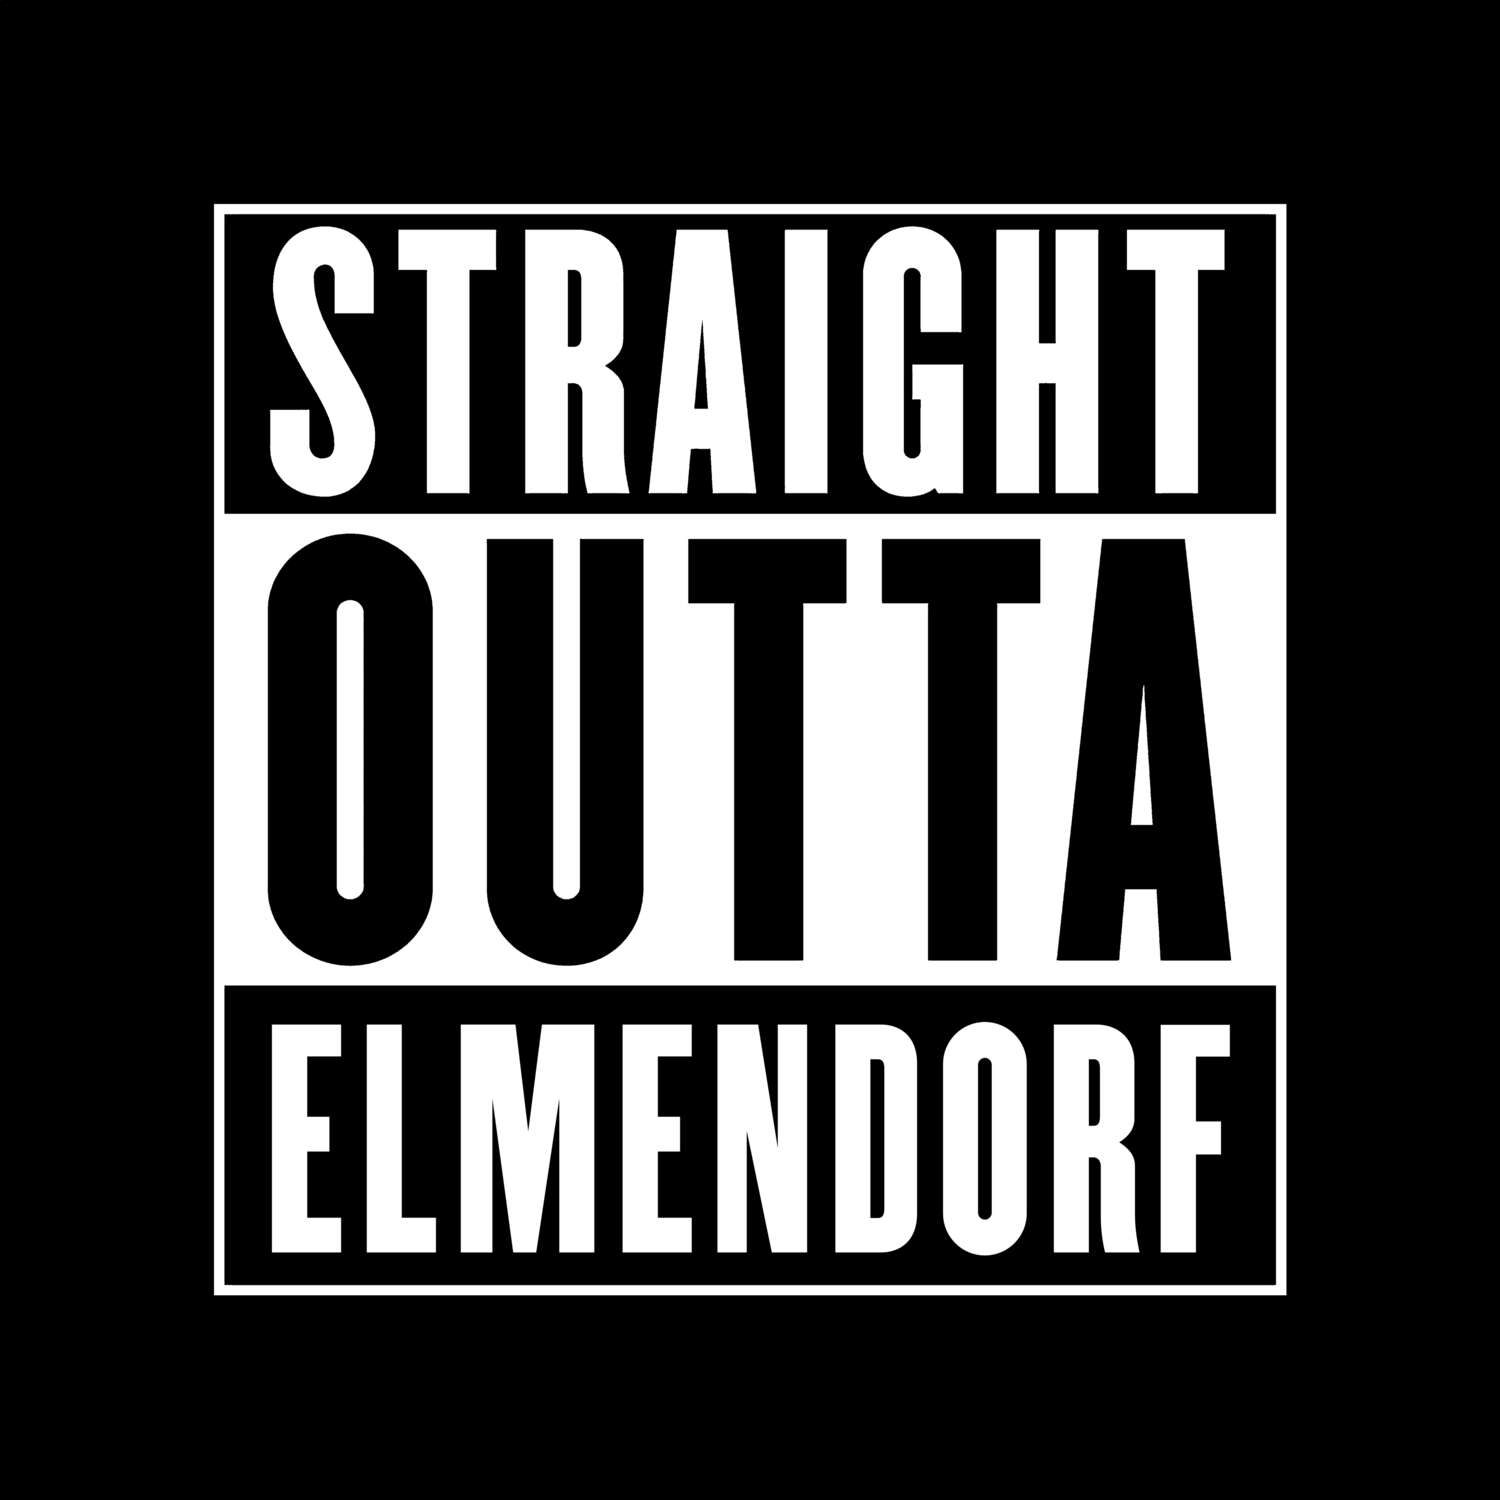 Elmendorf T-Shirt »Straight Outta«